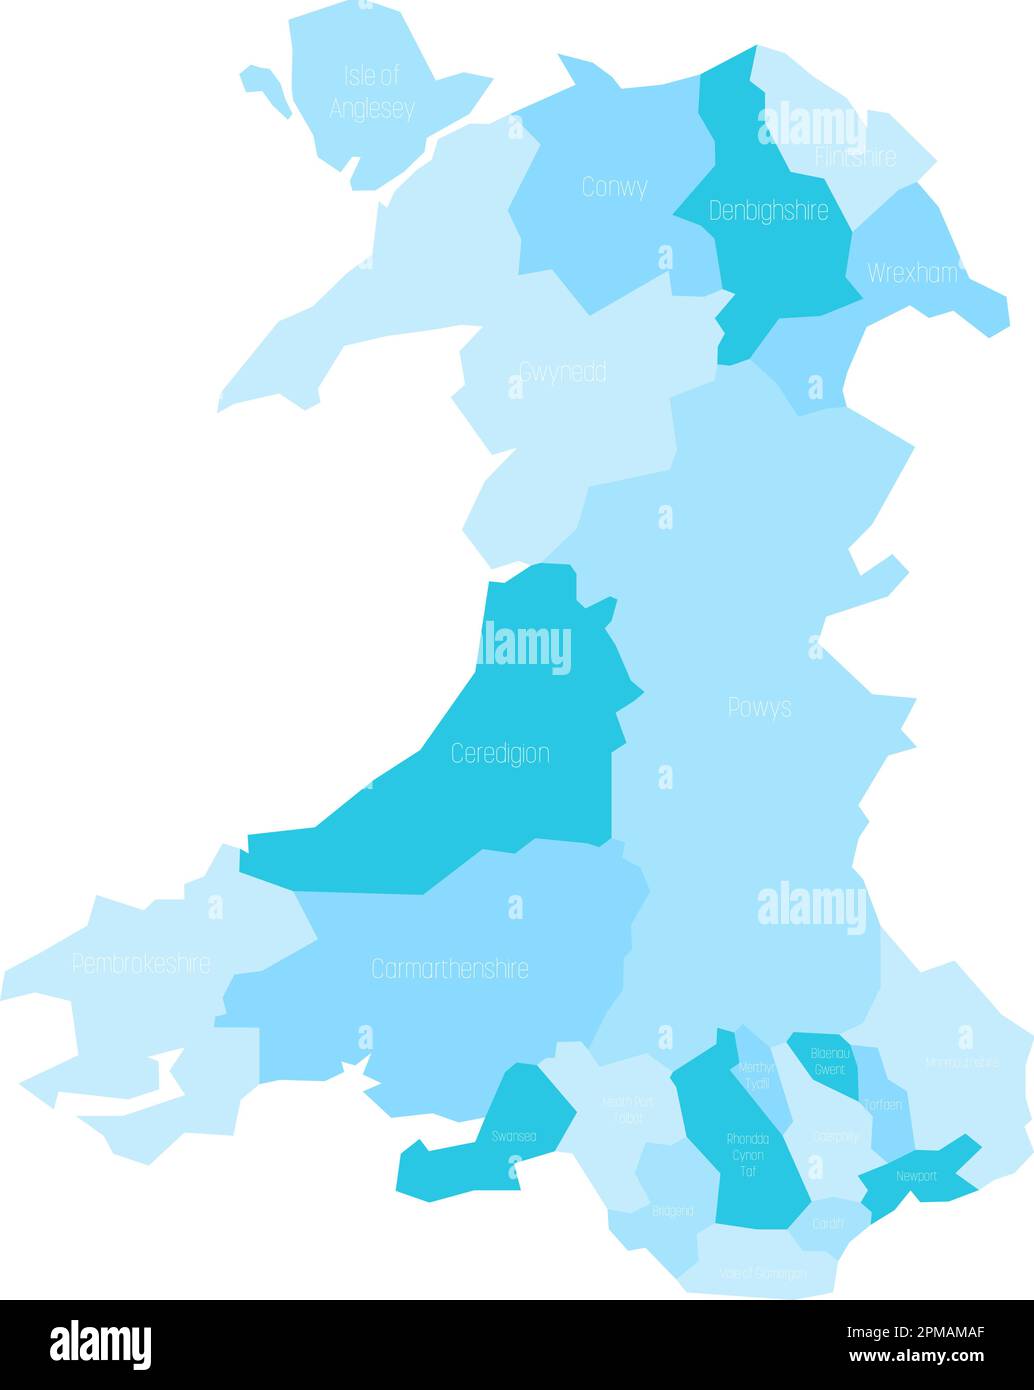 Bezirke und Städte von Wales. Blaue Vektorkarte mit Beschriftungen. Stock Vektor